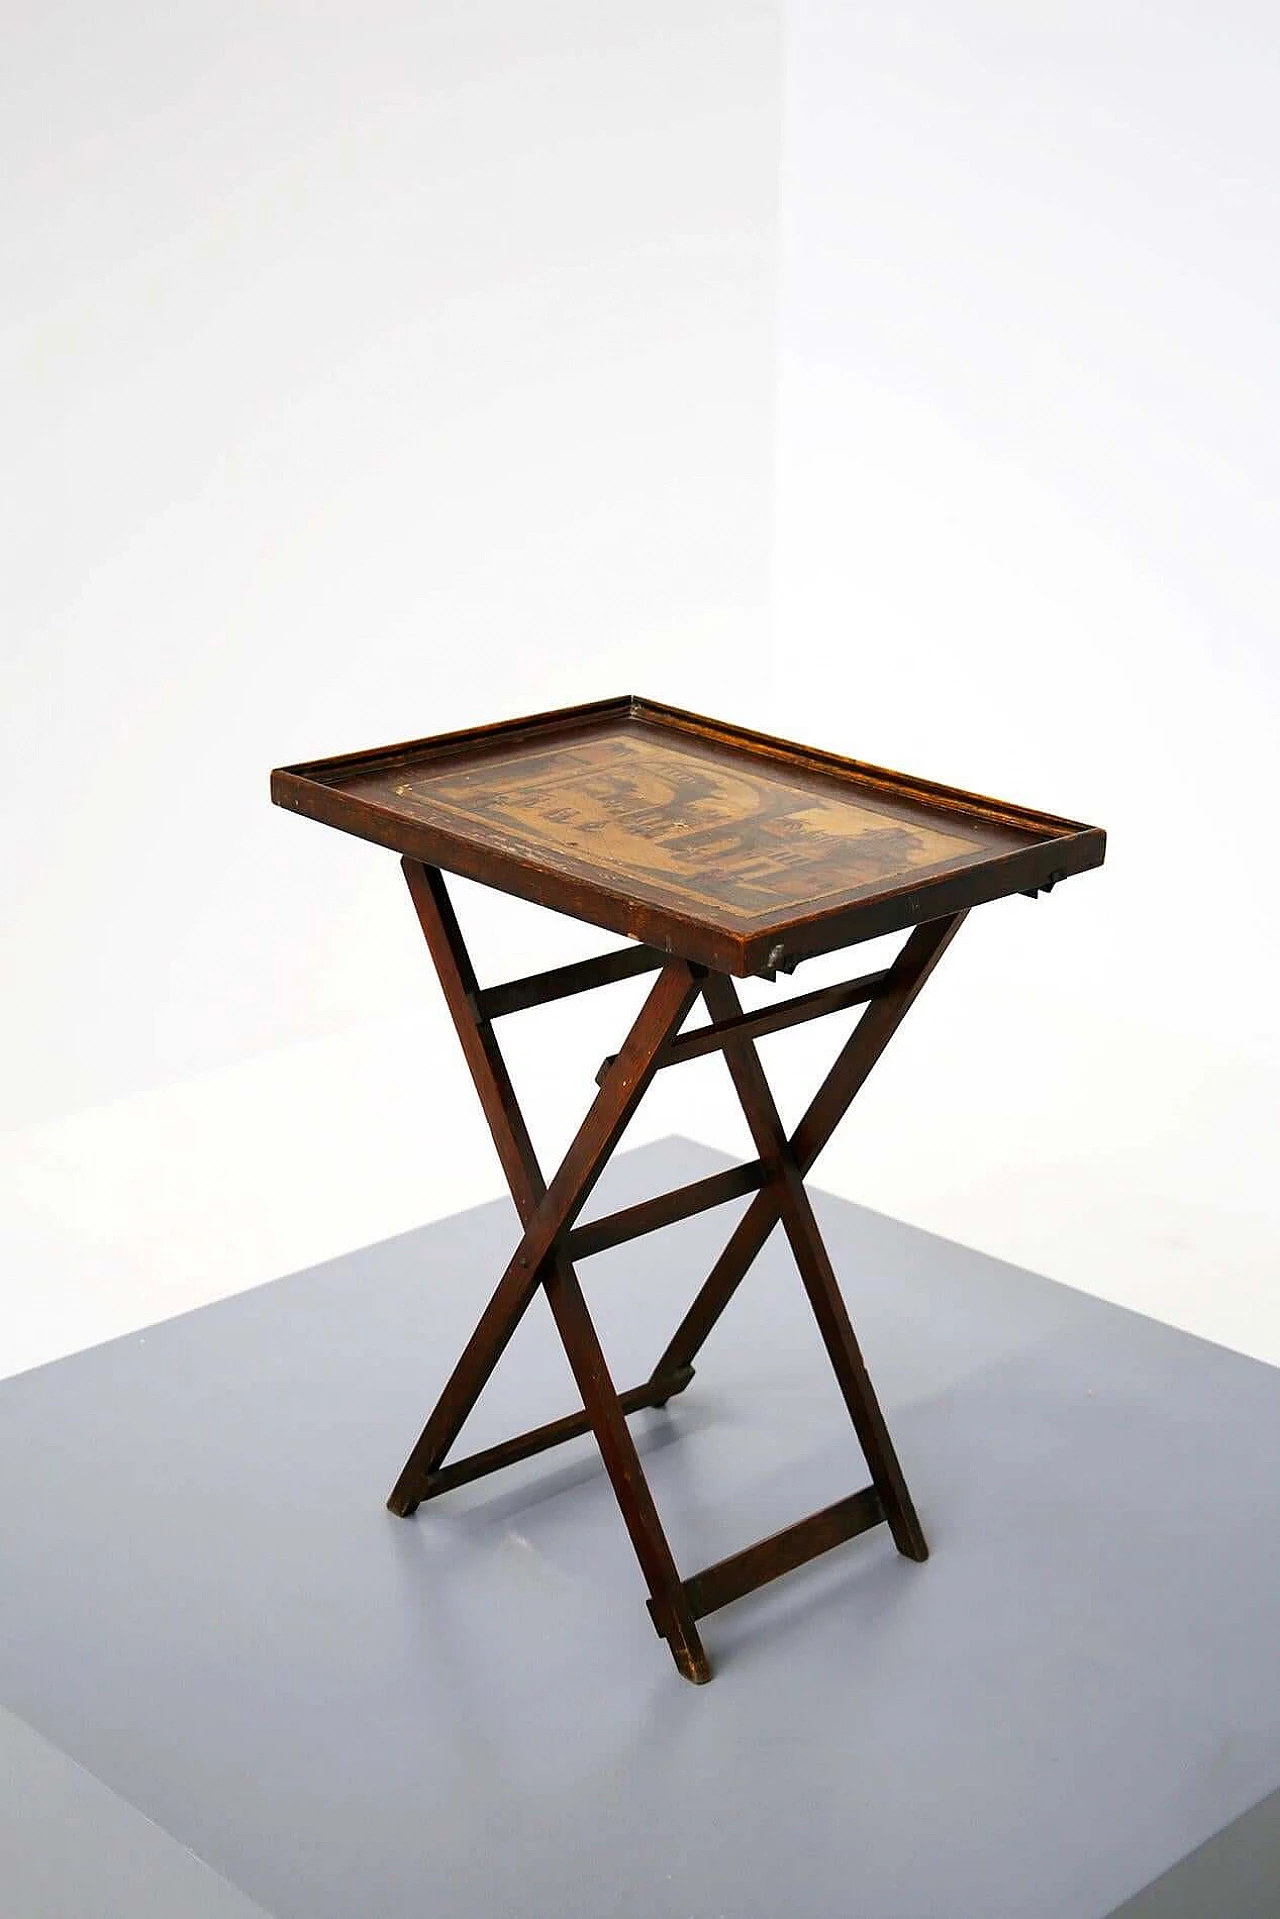 Tavolino pieghevole cinese in legno con piano decorato, del '800 1412607